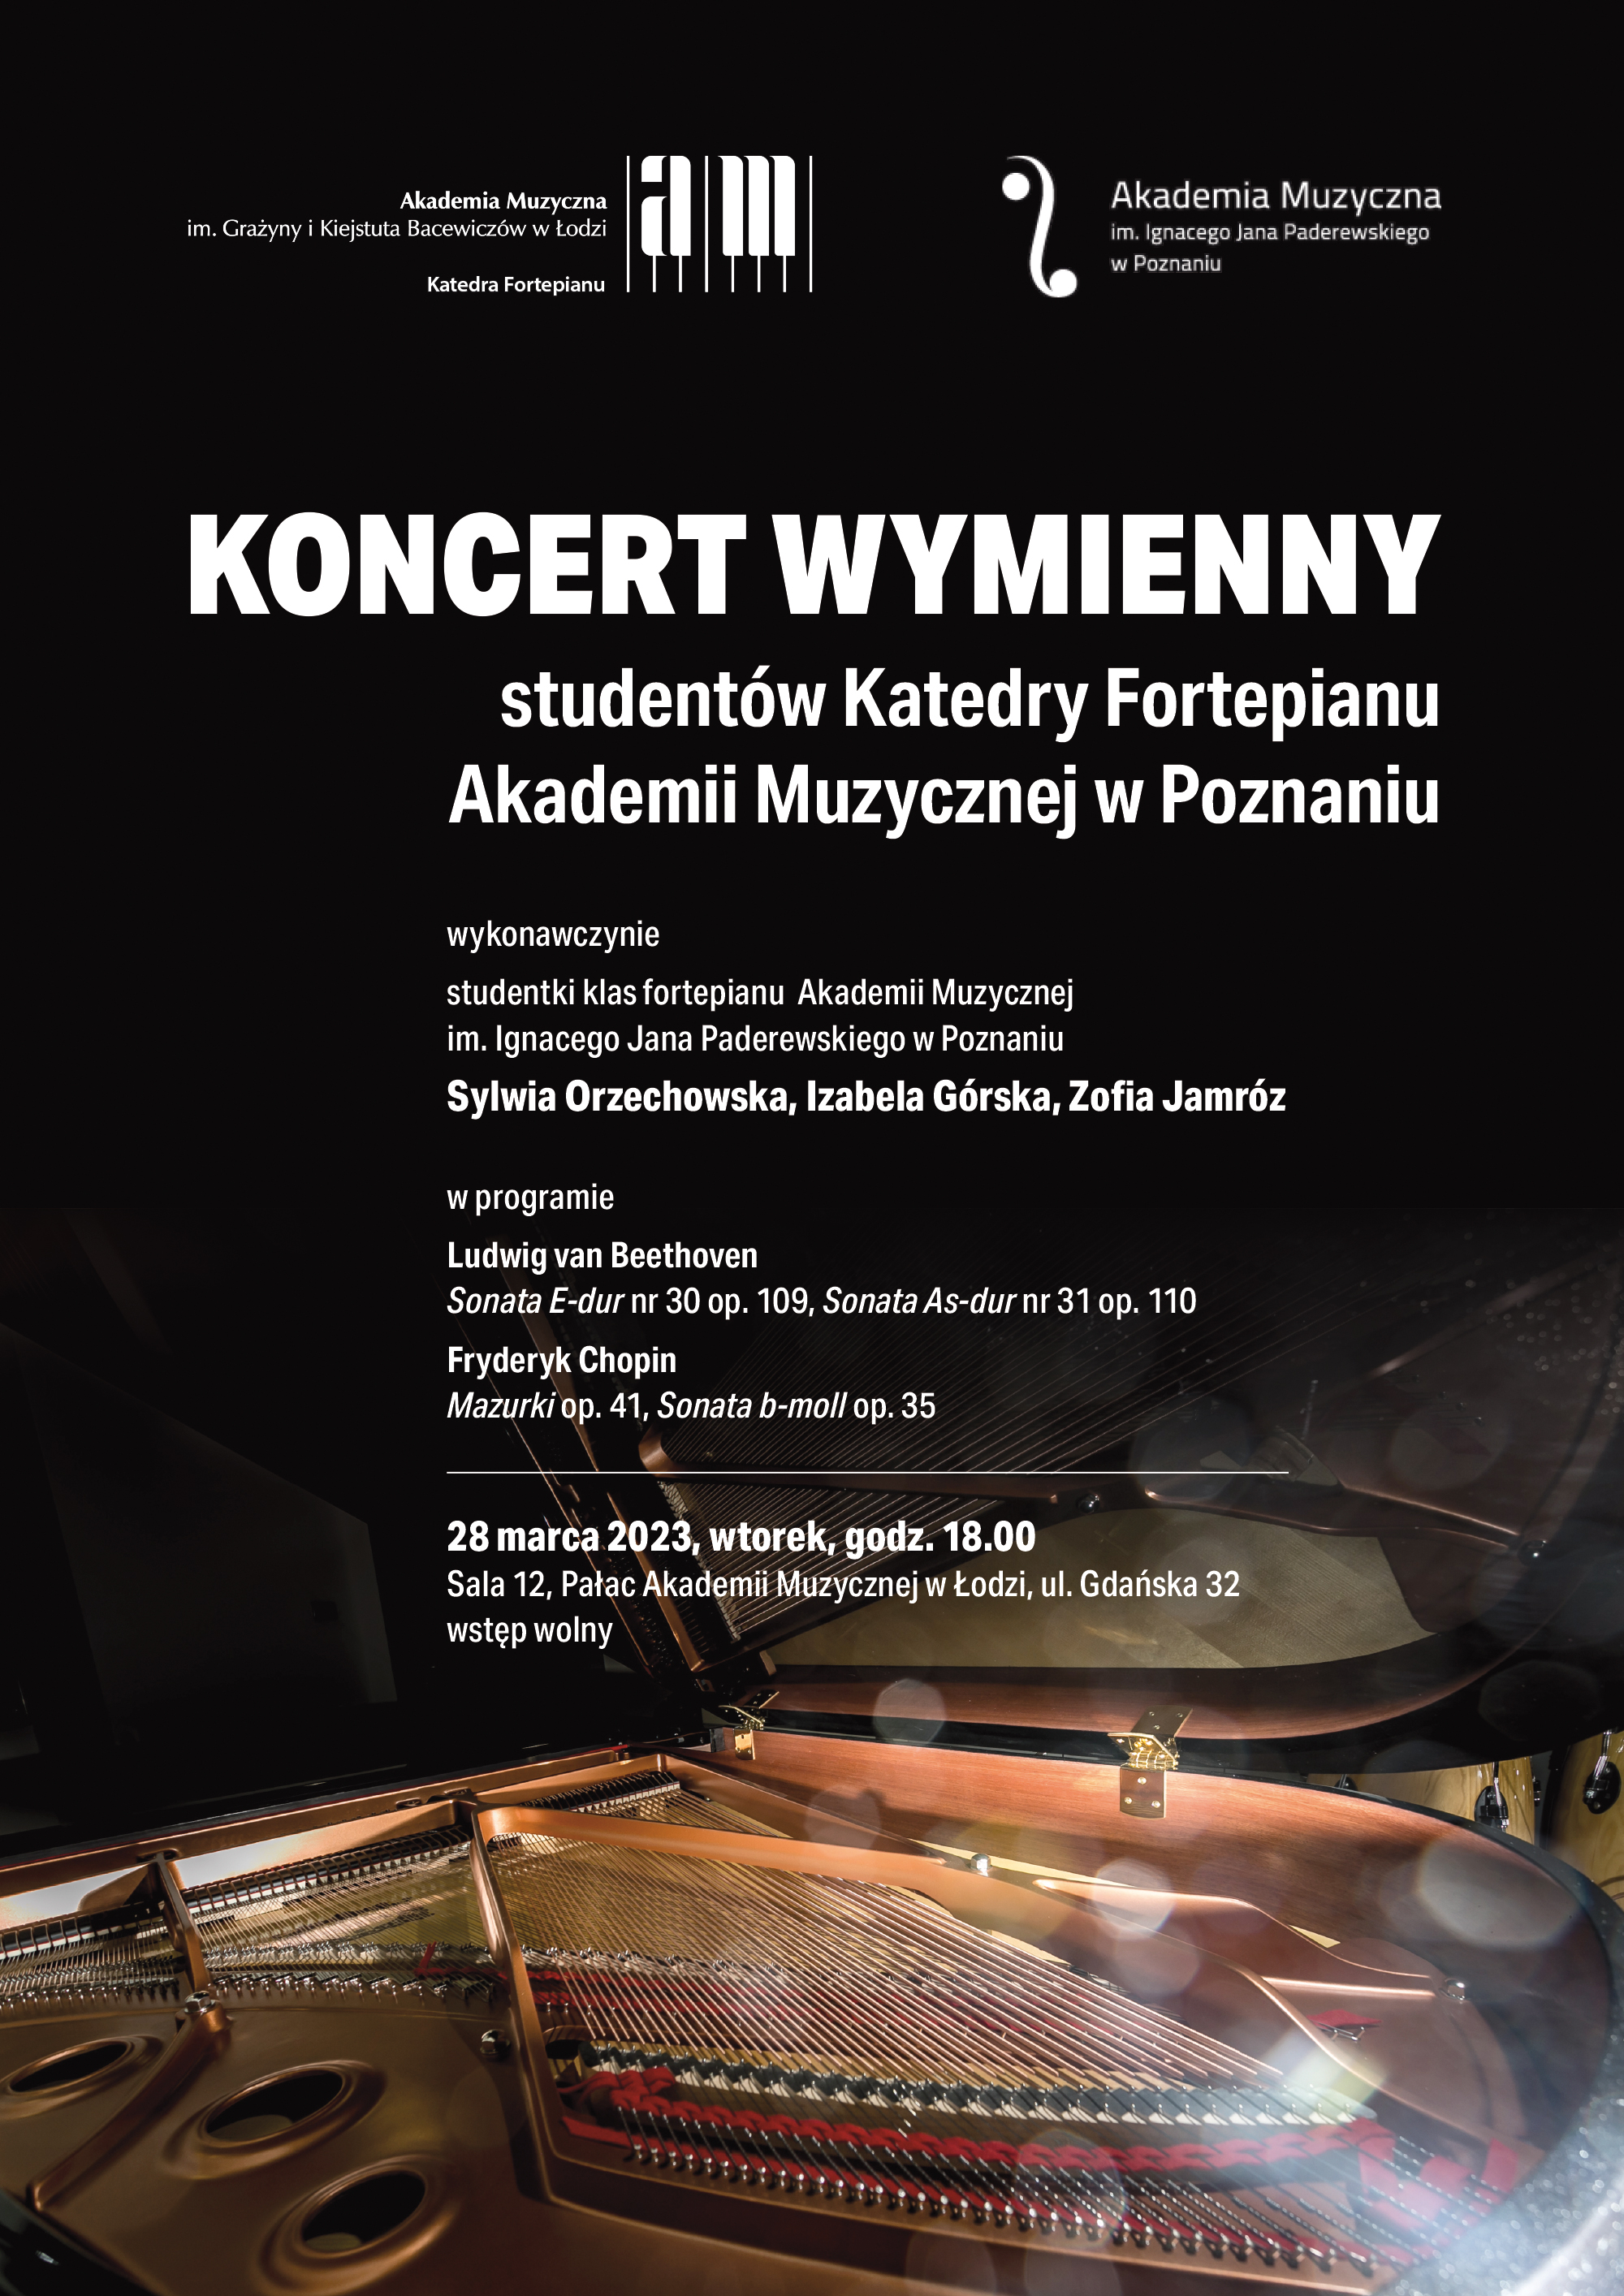 Koncert wymienny studentów Katedry Fortepianu Akademii Muzycznej w Poznaniu